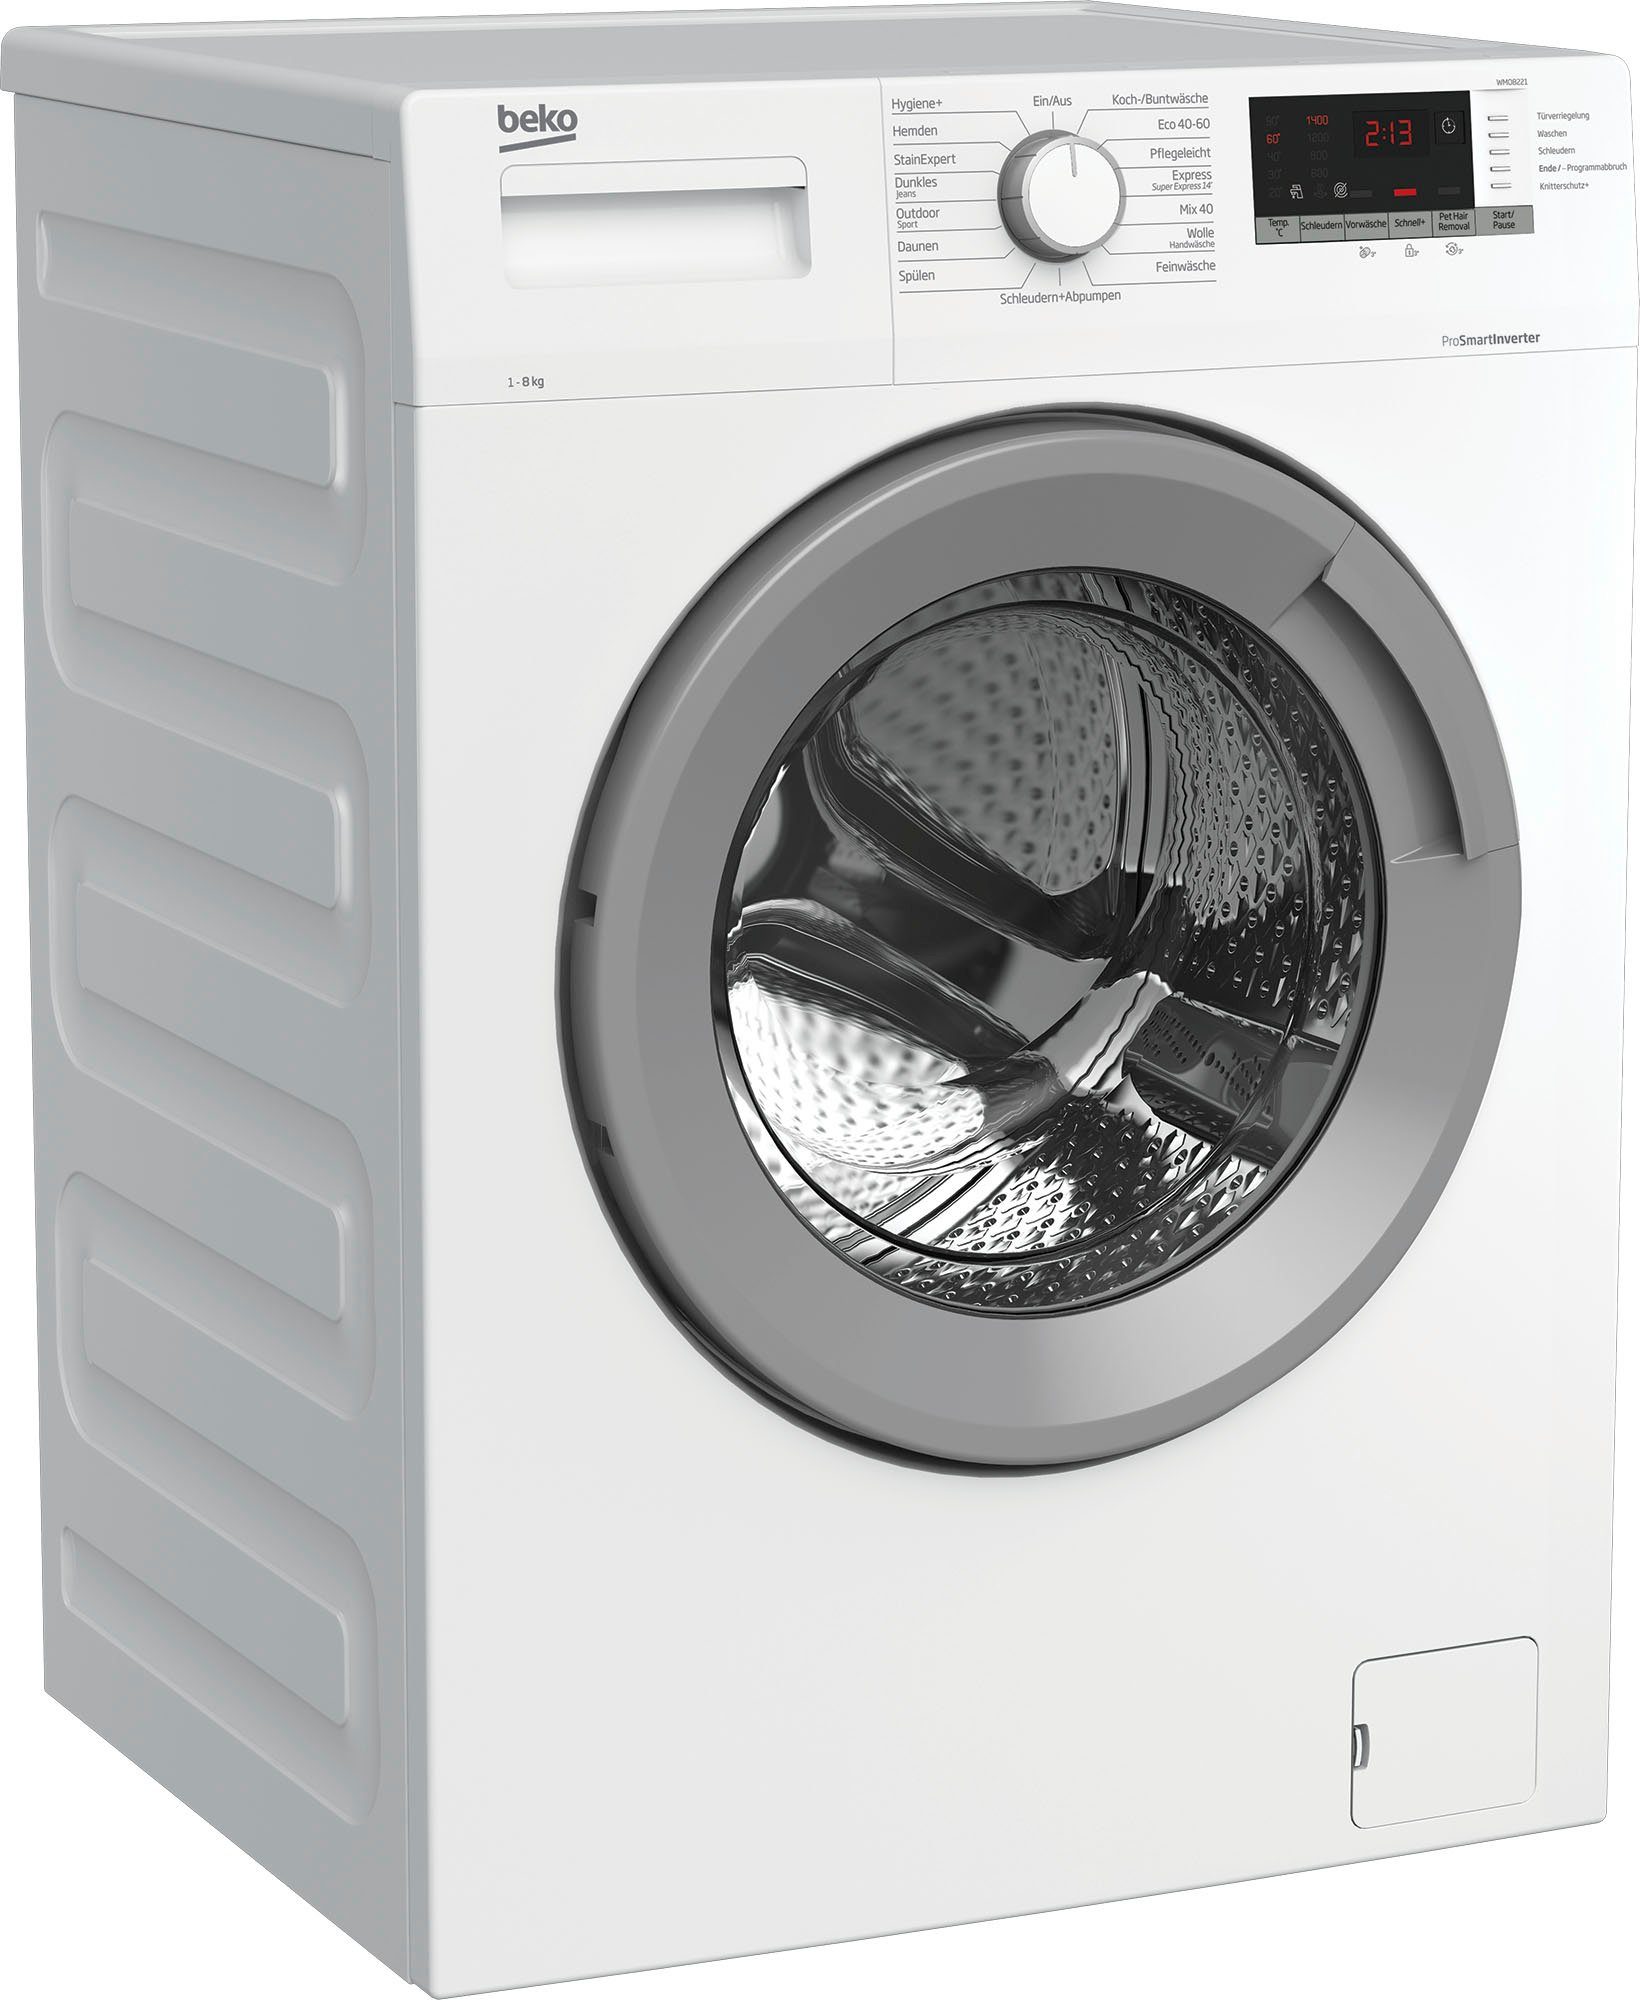 8 BEKO WMO8221, kg, 1400 U/min Waschmaschine